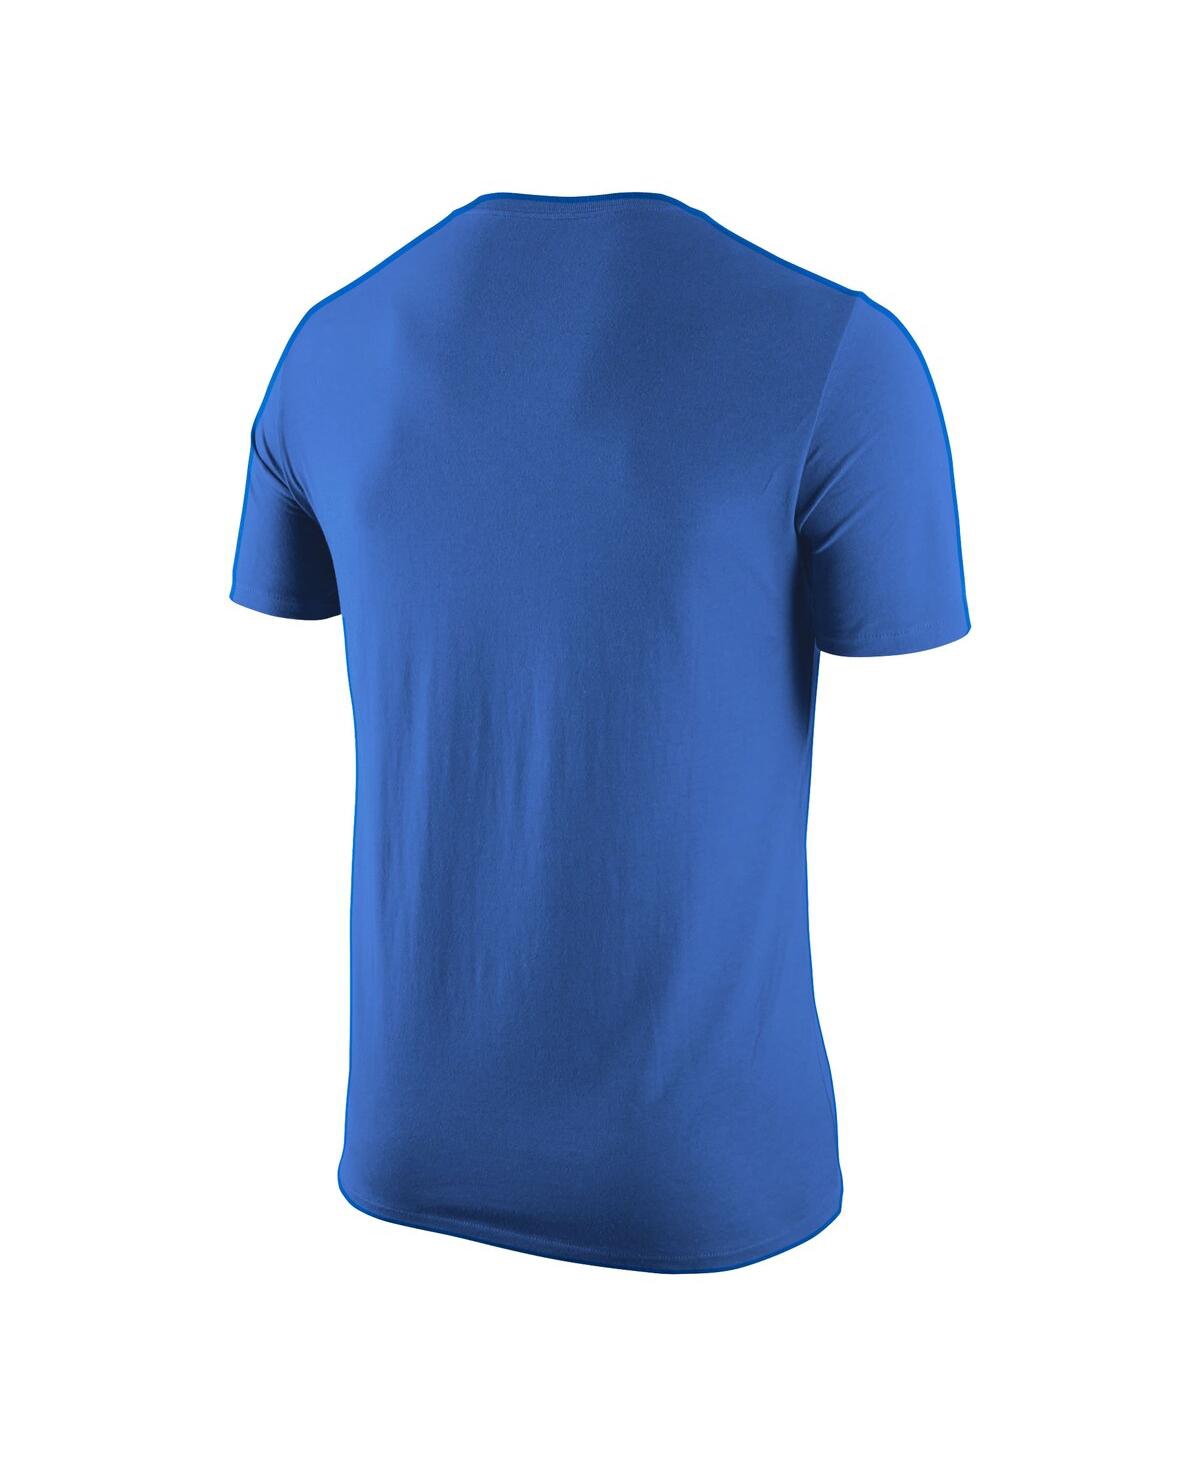 Shop Jordan Men's  Blue Ucla Bruins Basketball Logo T-shirt